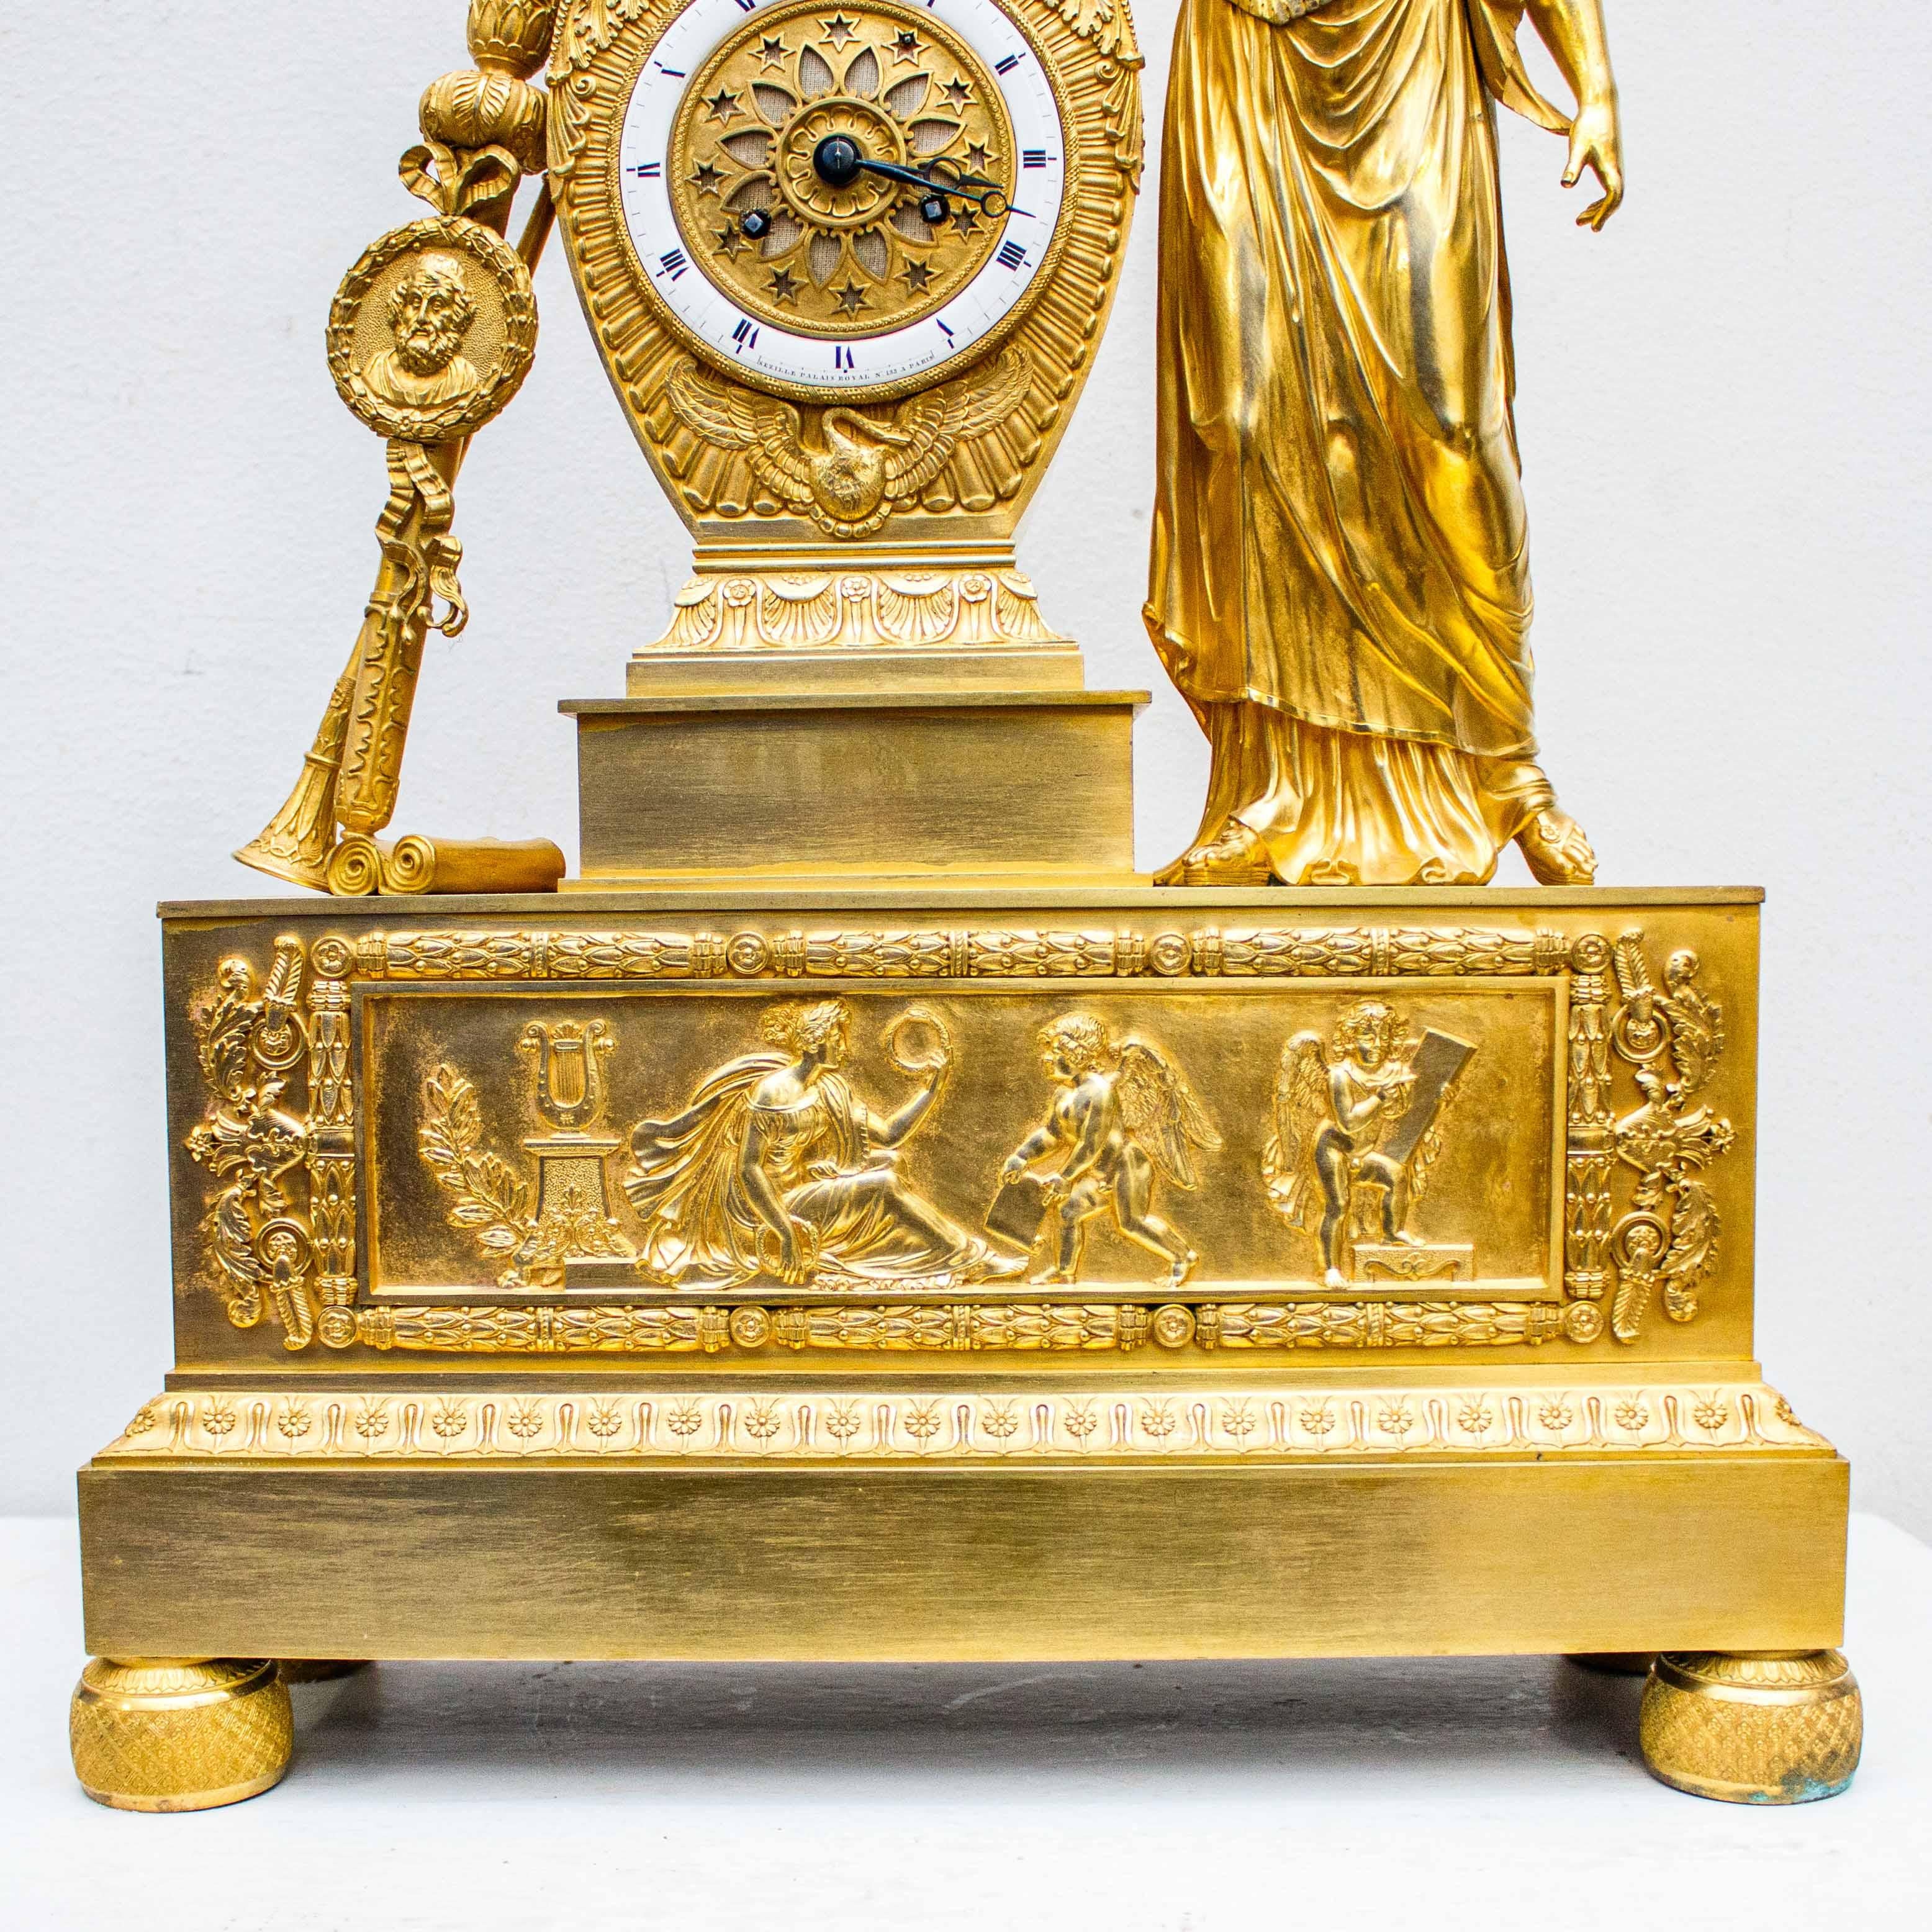 France, vers 1810 -1820

Horloge de table avec une servante

Bronze doré au mercure, alt. cm 59,5 x 40,5 x 13

Signé dans le quadrant 